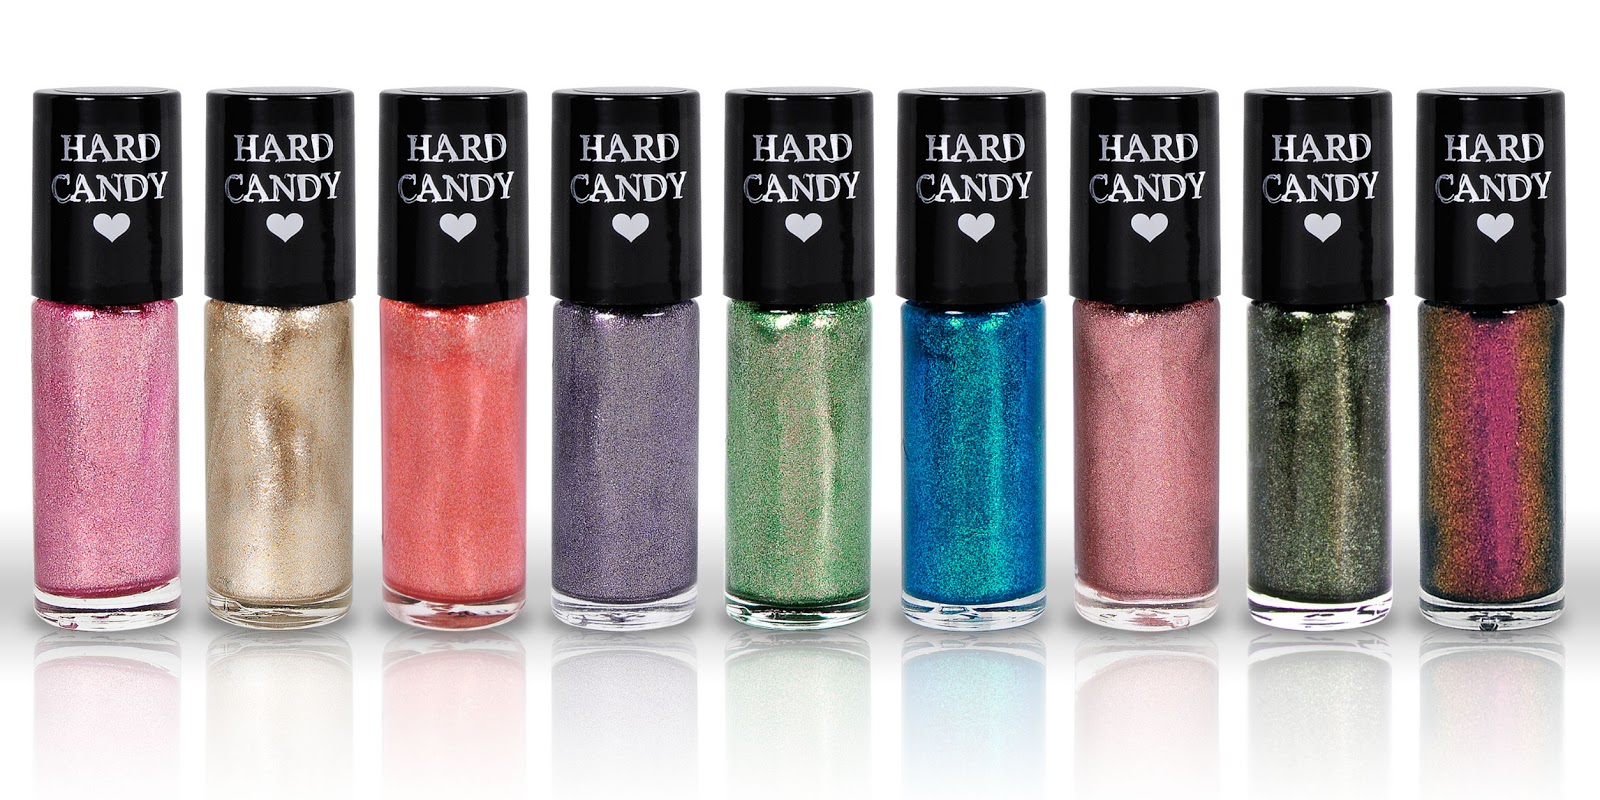 Hard Candy Nail Polish - wide 5